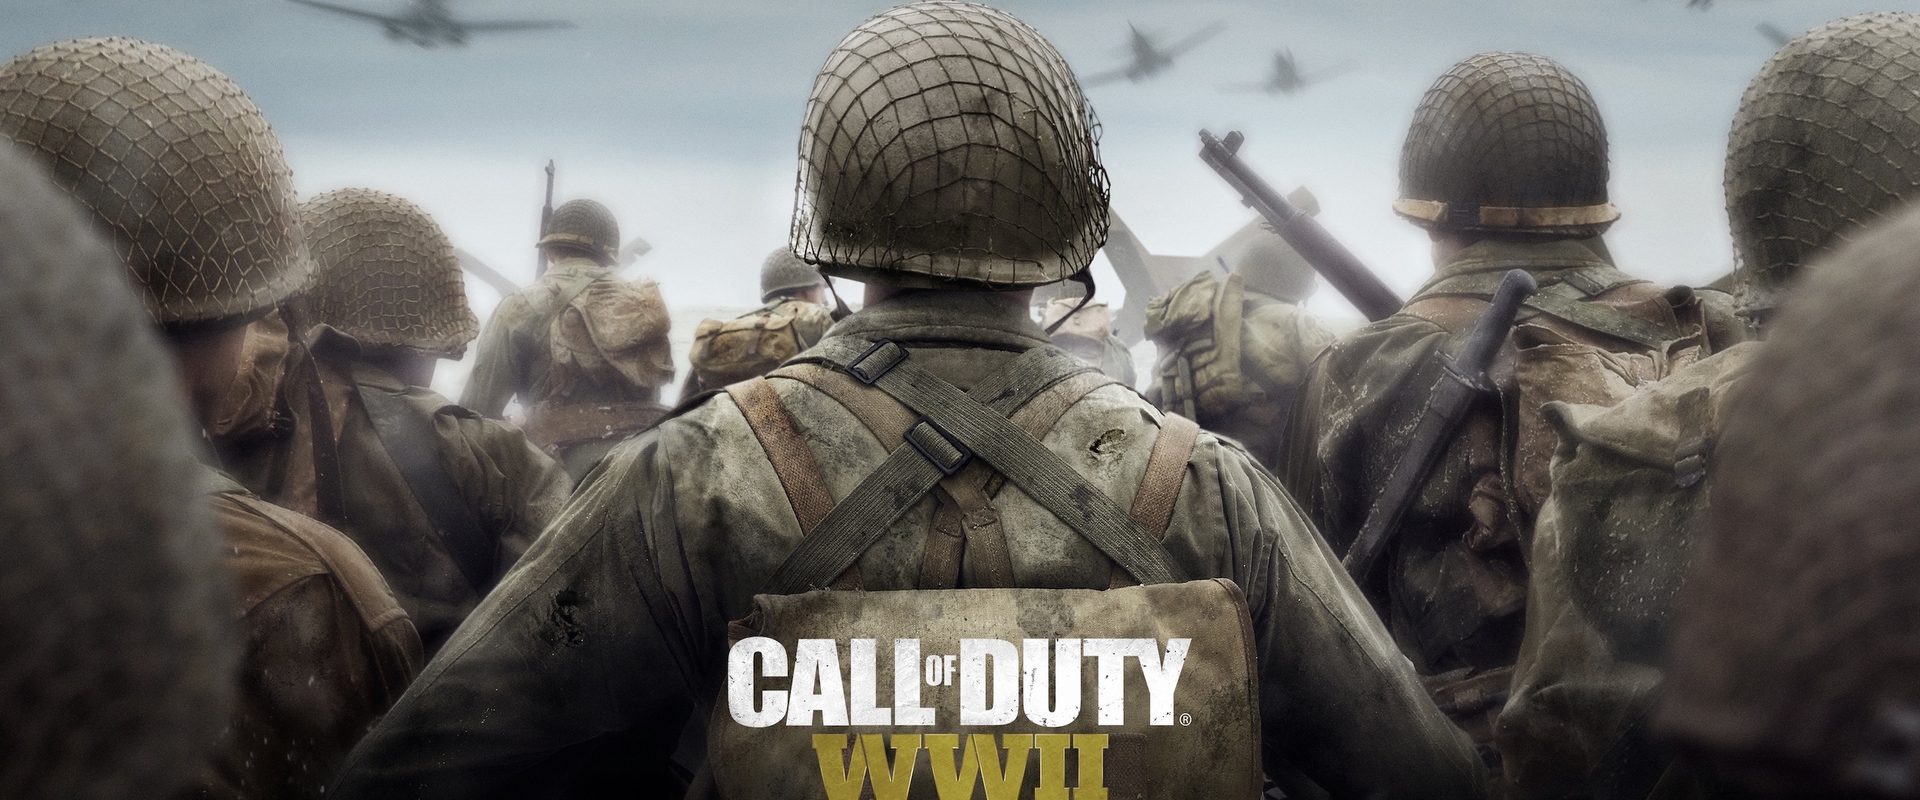 Ismerd meg 7 percben a Call of Duty: WWII háborús helyszíneit!